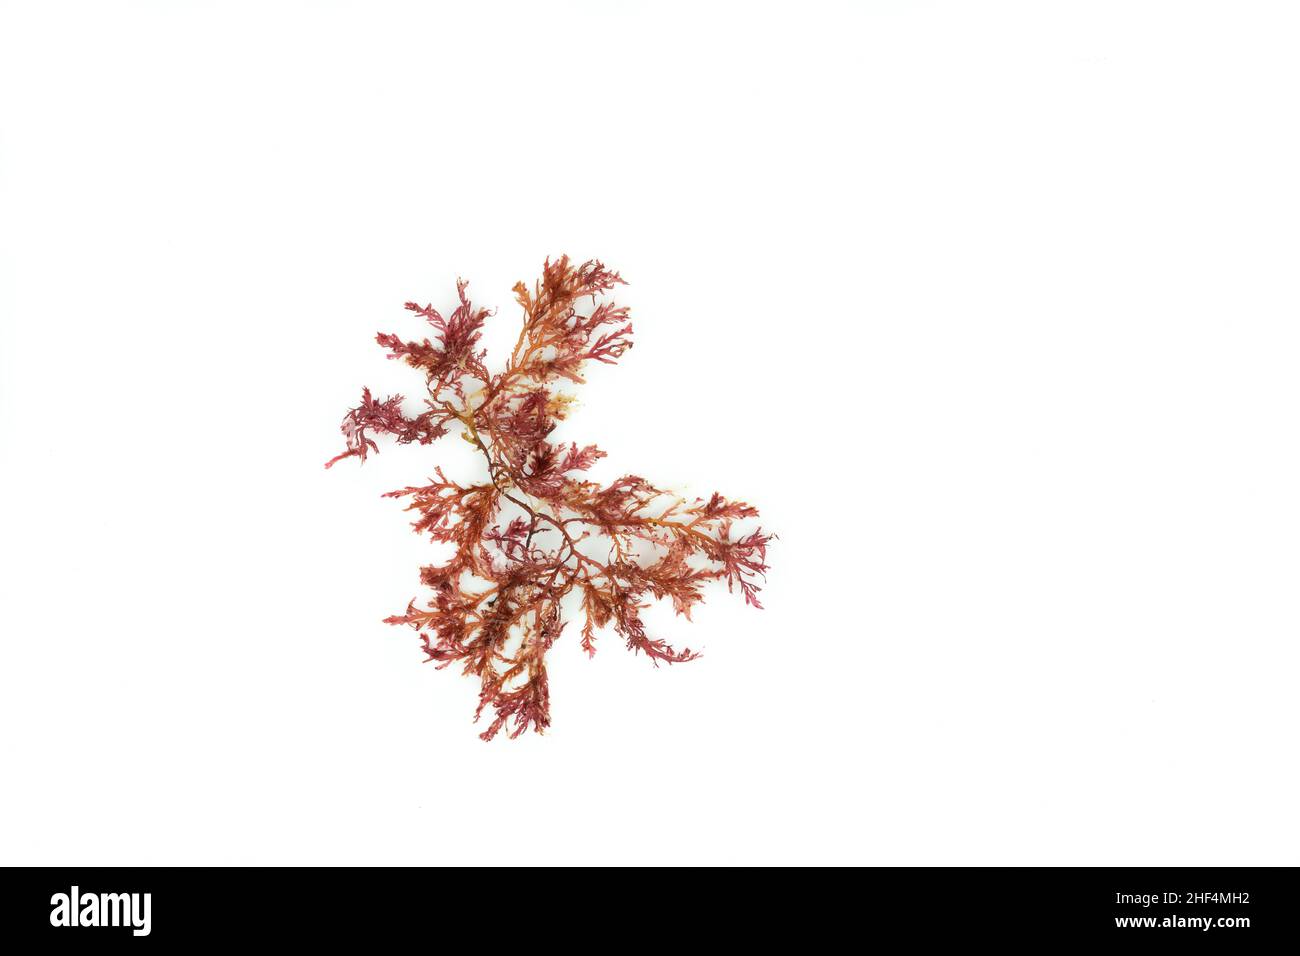 Red algae, Gelidium, on white background. Stock Photo